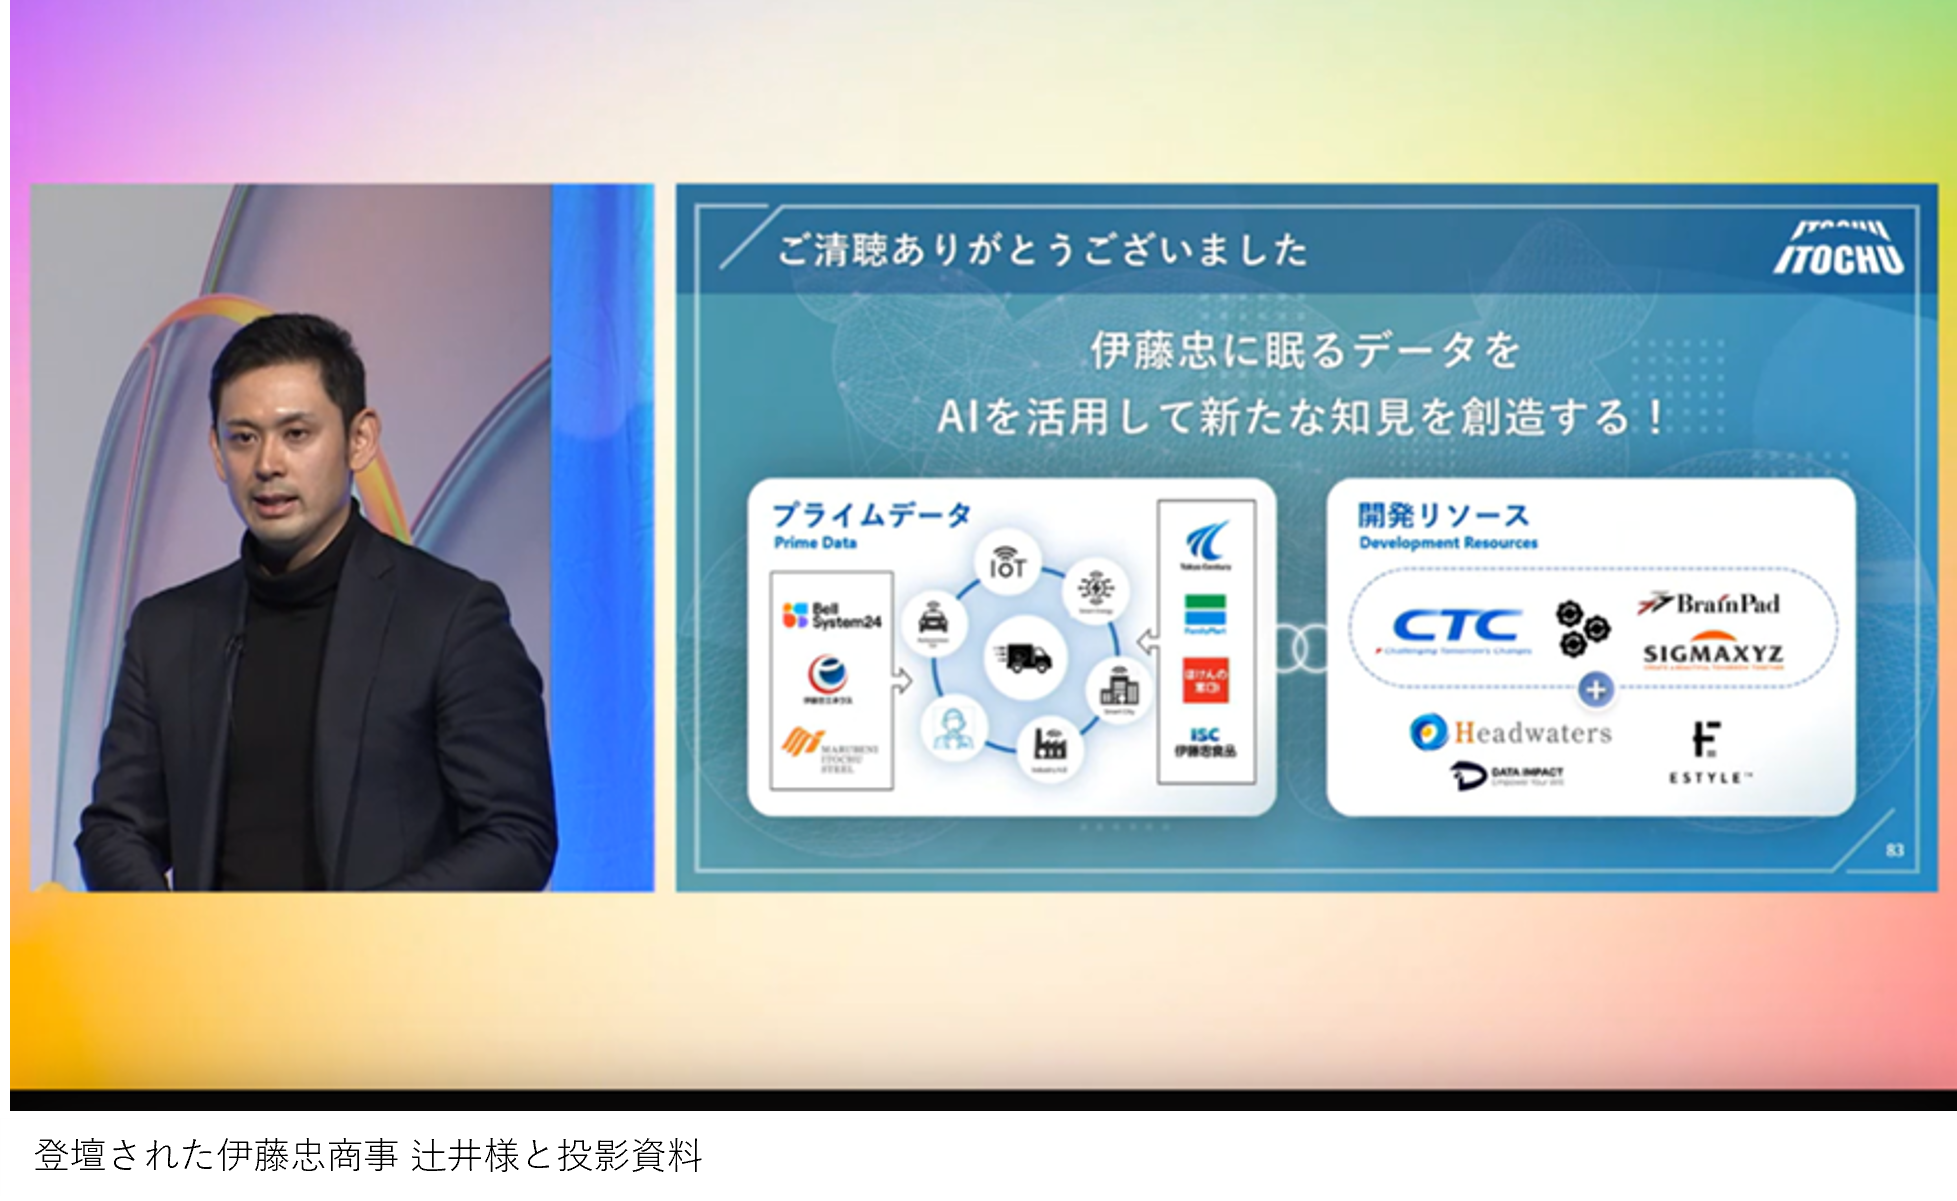 Microsoft Ignite Japanのセッション「伊藤忠商事における生成AIの活用紹介と Azure AI Studio及びFabricに対する期待」でヘッドウォータースグループの支援についてご紹介いただきました